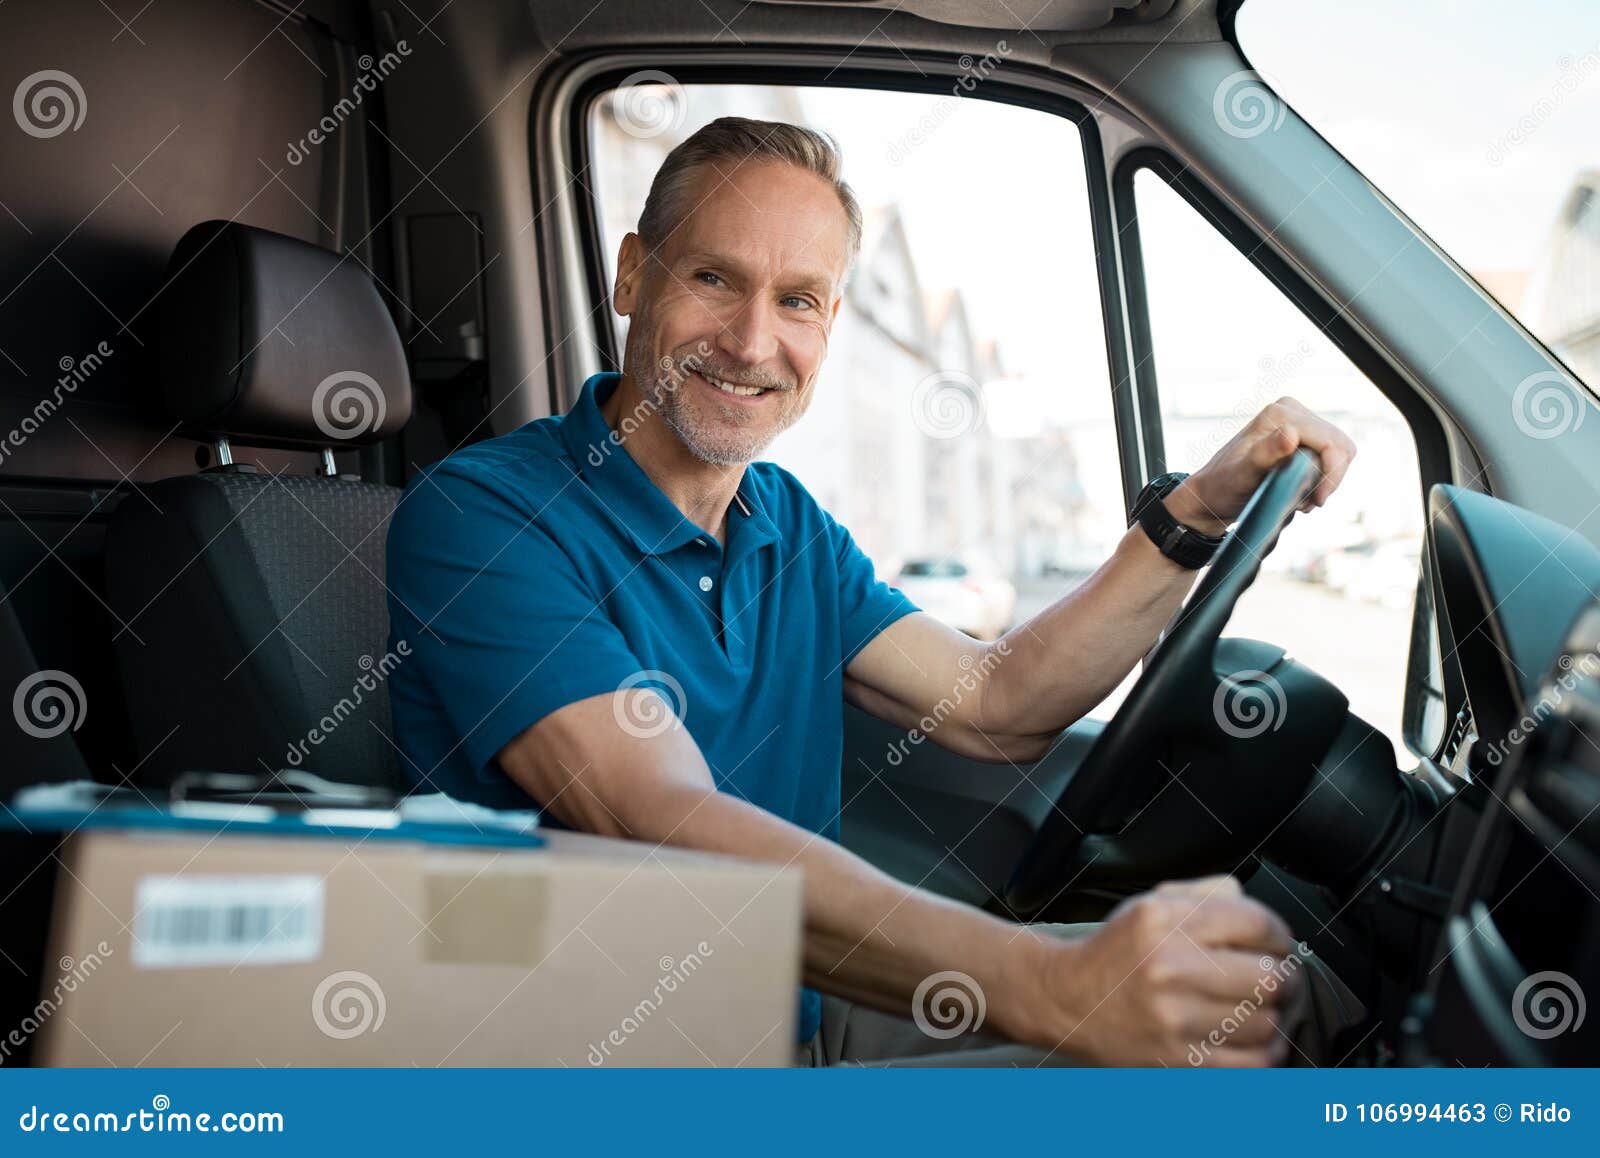 delivery man driving van